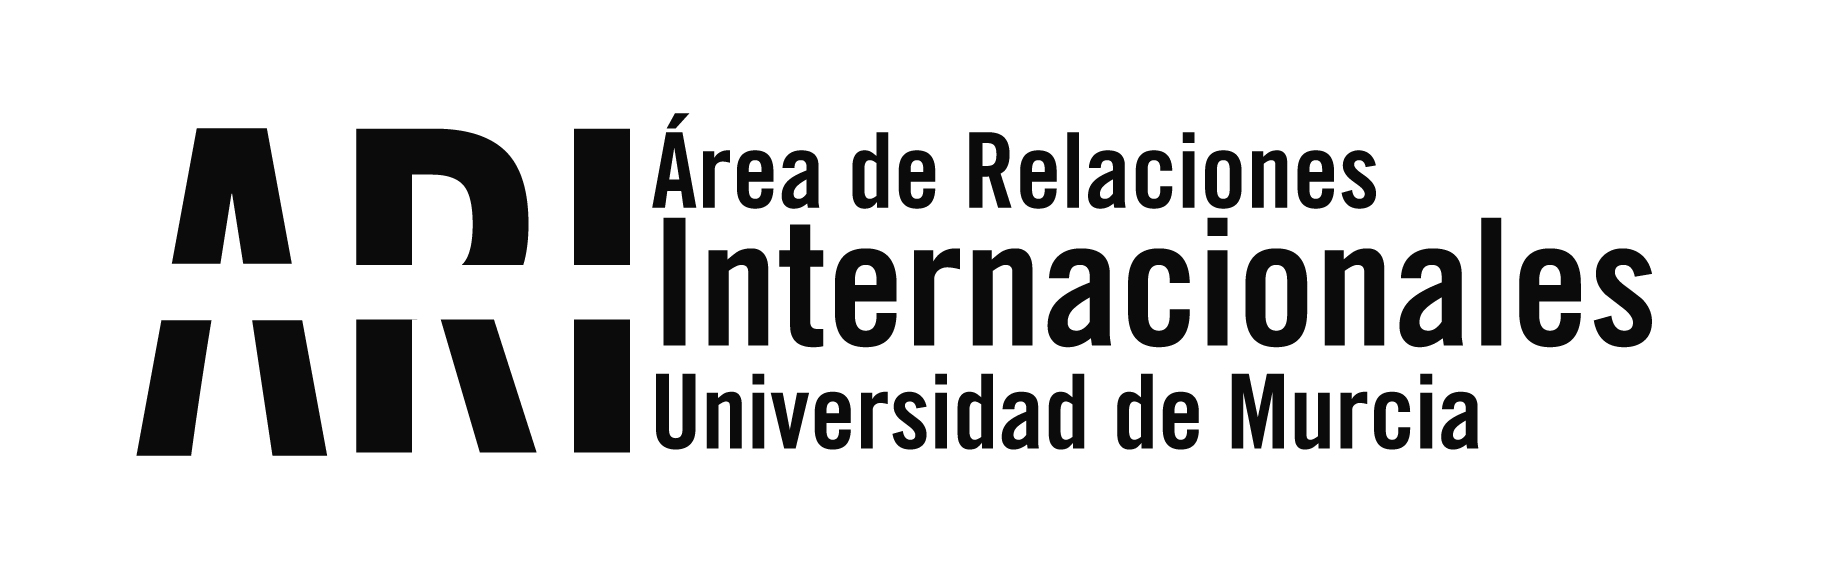 Actividades Ayuntamiento de Murcia, ESN y UMU - Eventos - Área de Relaciones Internacionales